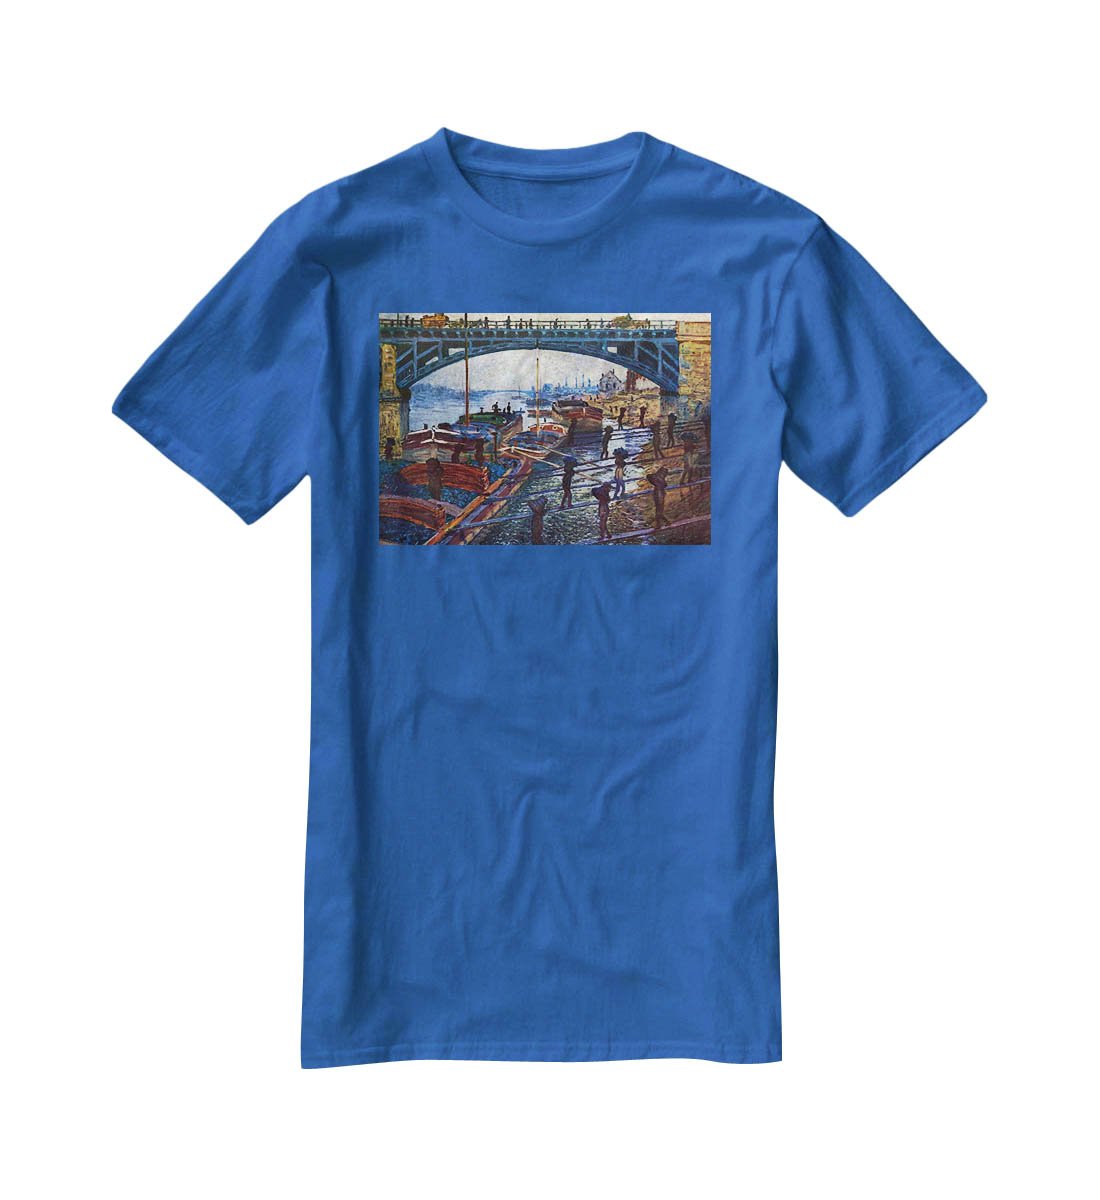 The coal carrier by Monet T-Shirt - Canvas Art Rocks - 2